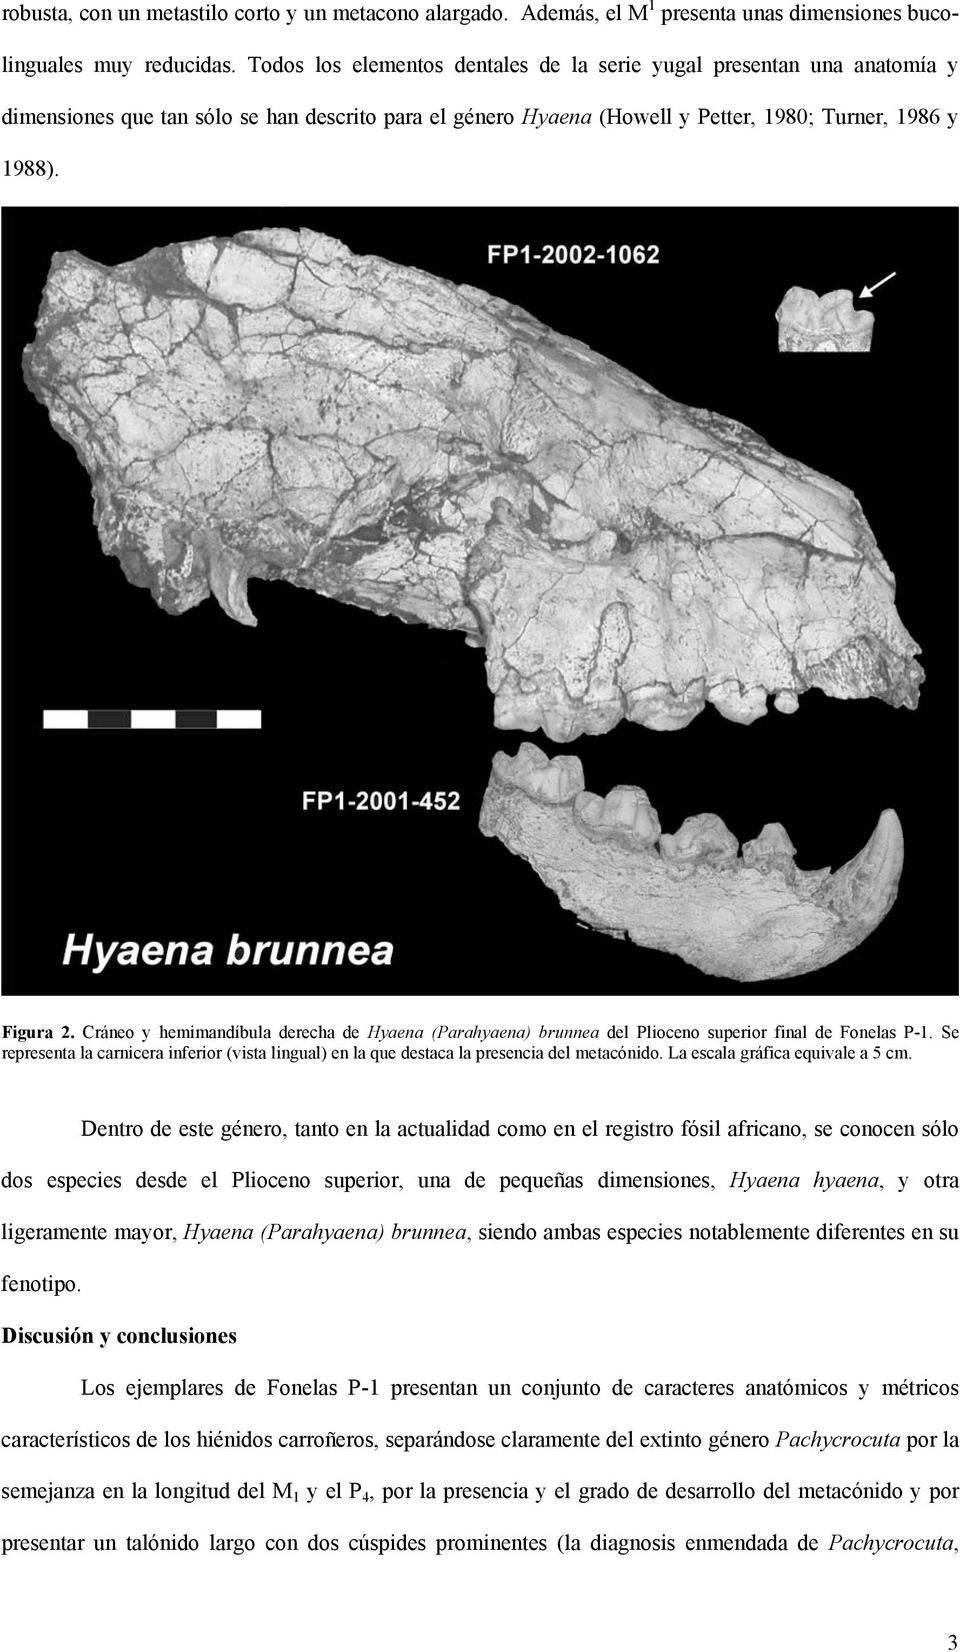 Cráneo y hemimandíbula derecha de Hyaena (Parahyaena) brunnea del Plioceno superior final de Fonelas P-1.